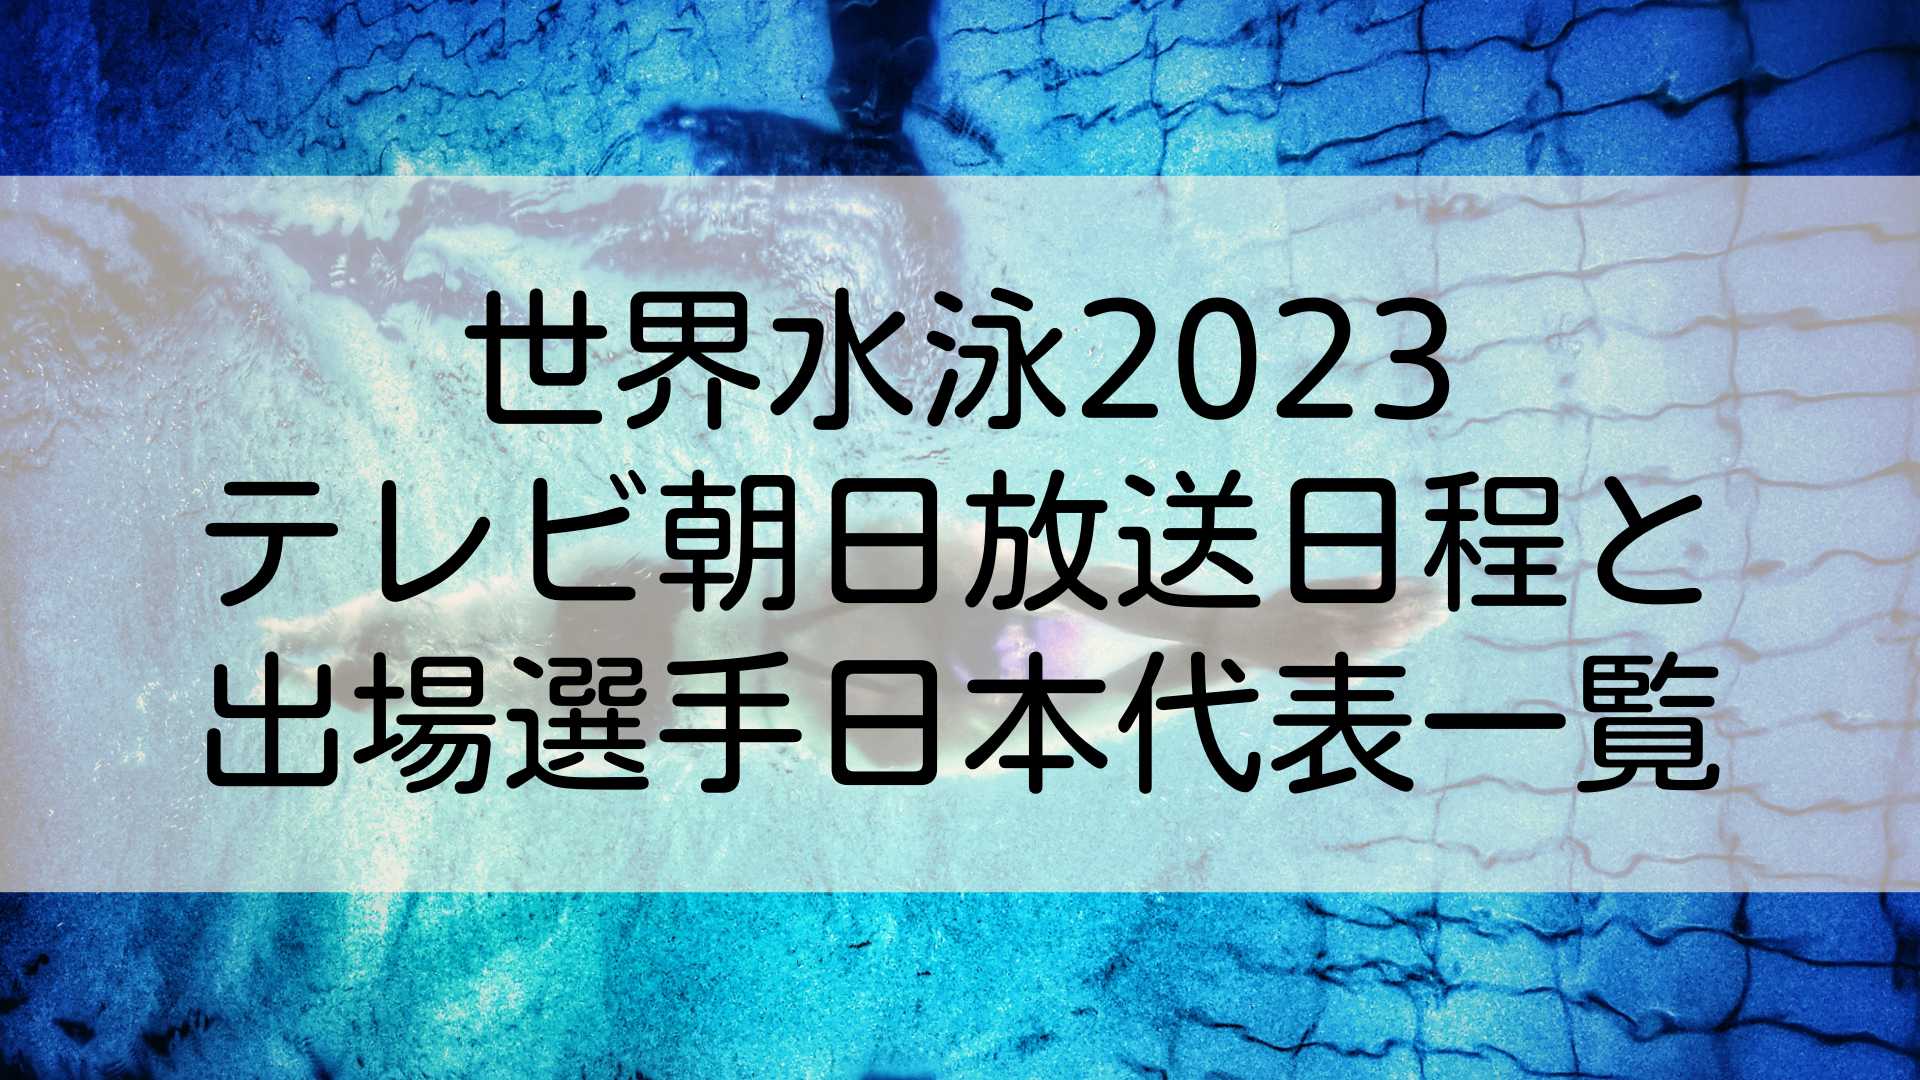 福岡世界水泳2023テレビ朝日放送日程と出場選手日本代表一覧のタイトル画像